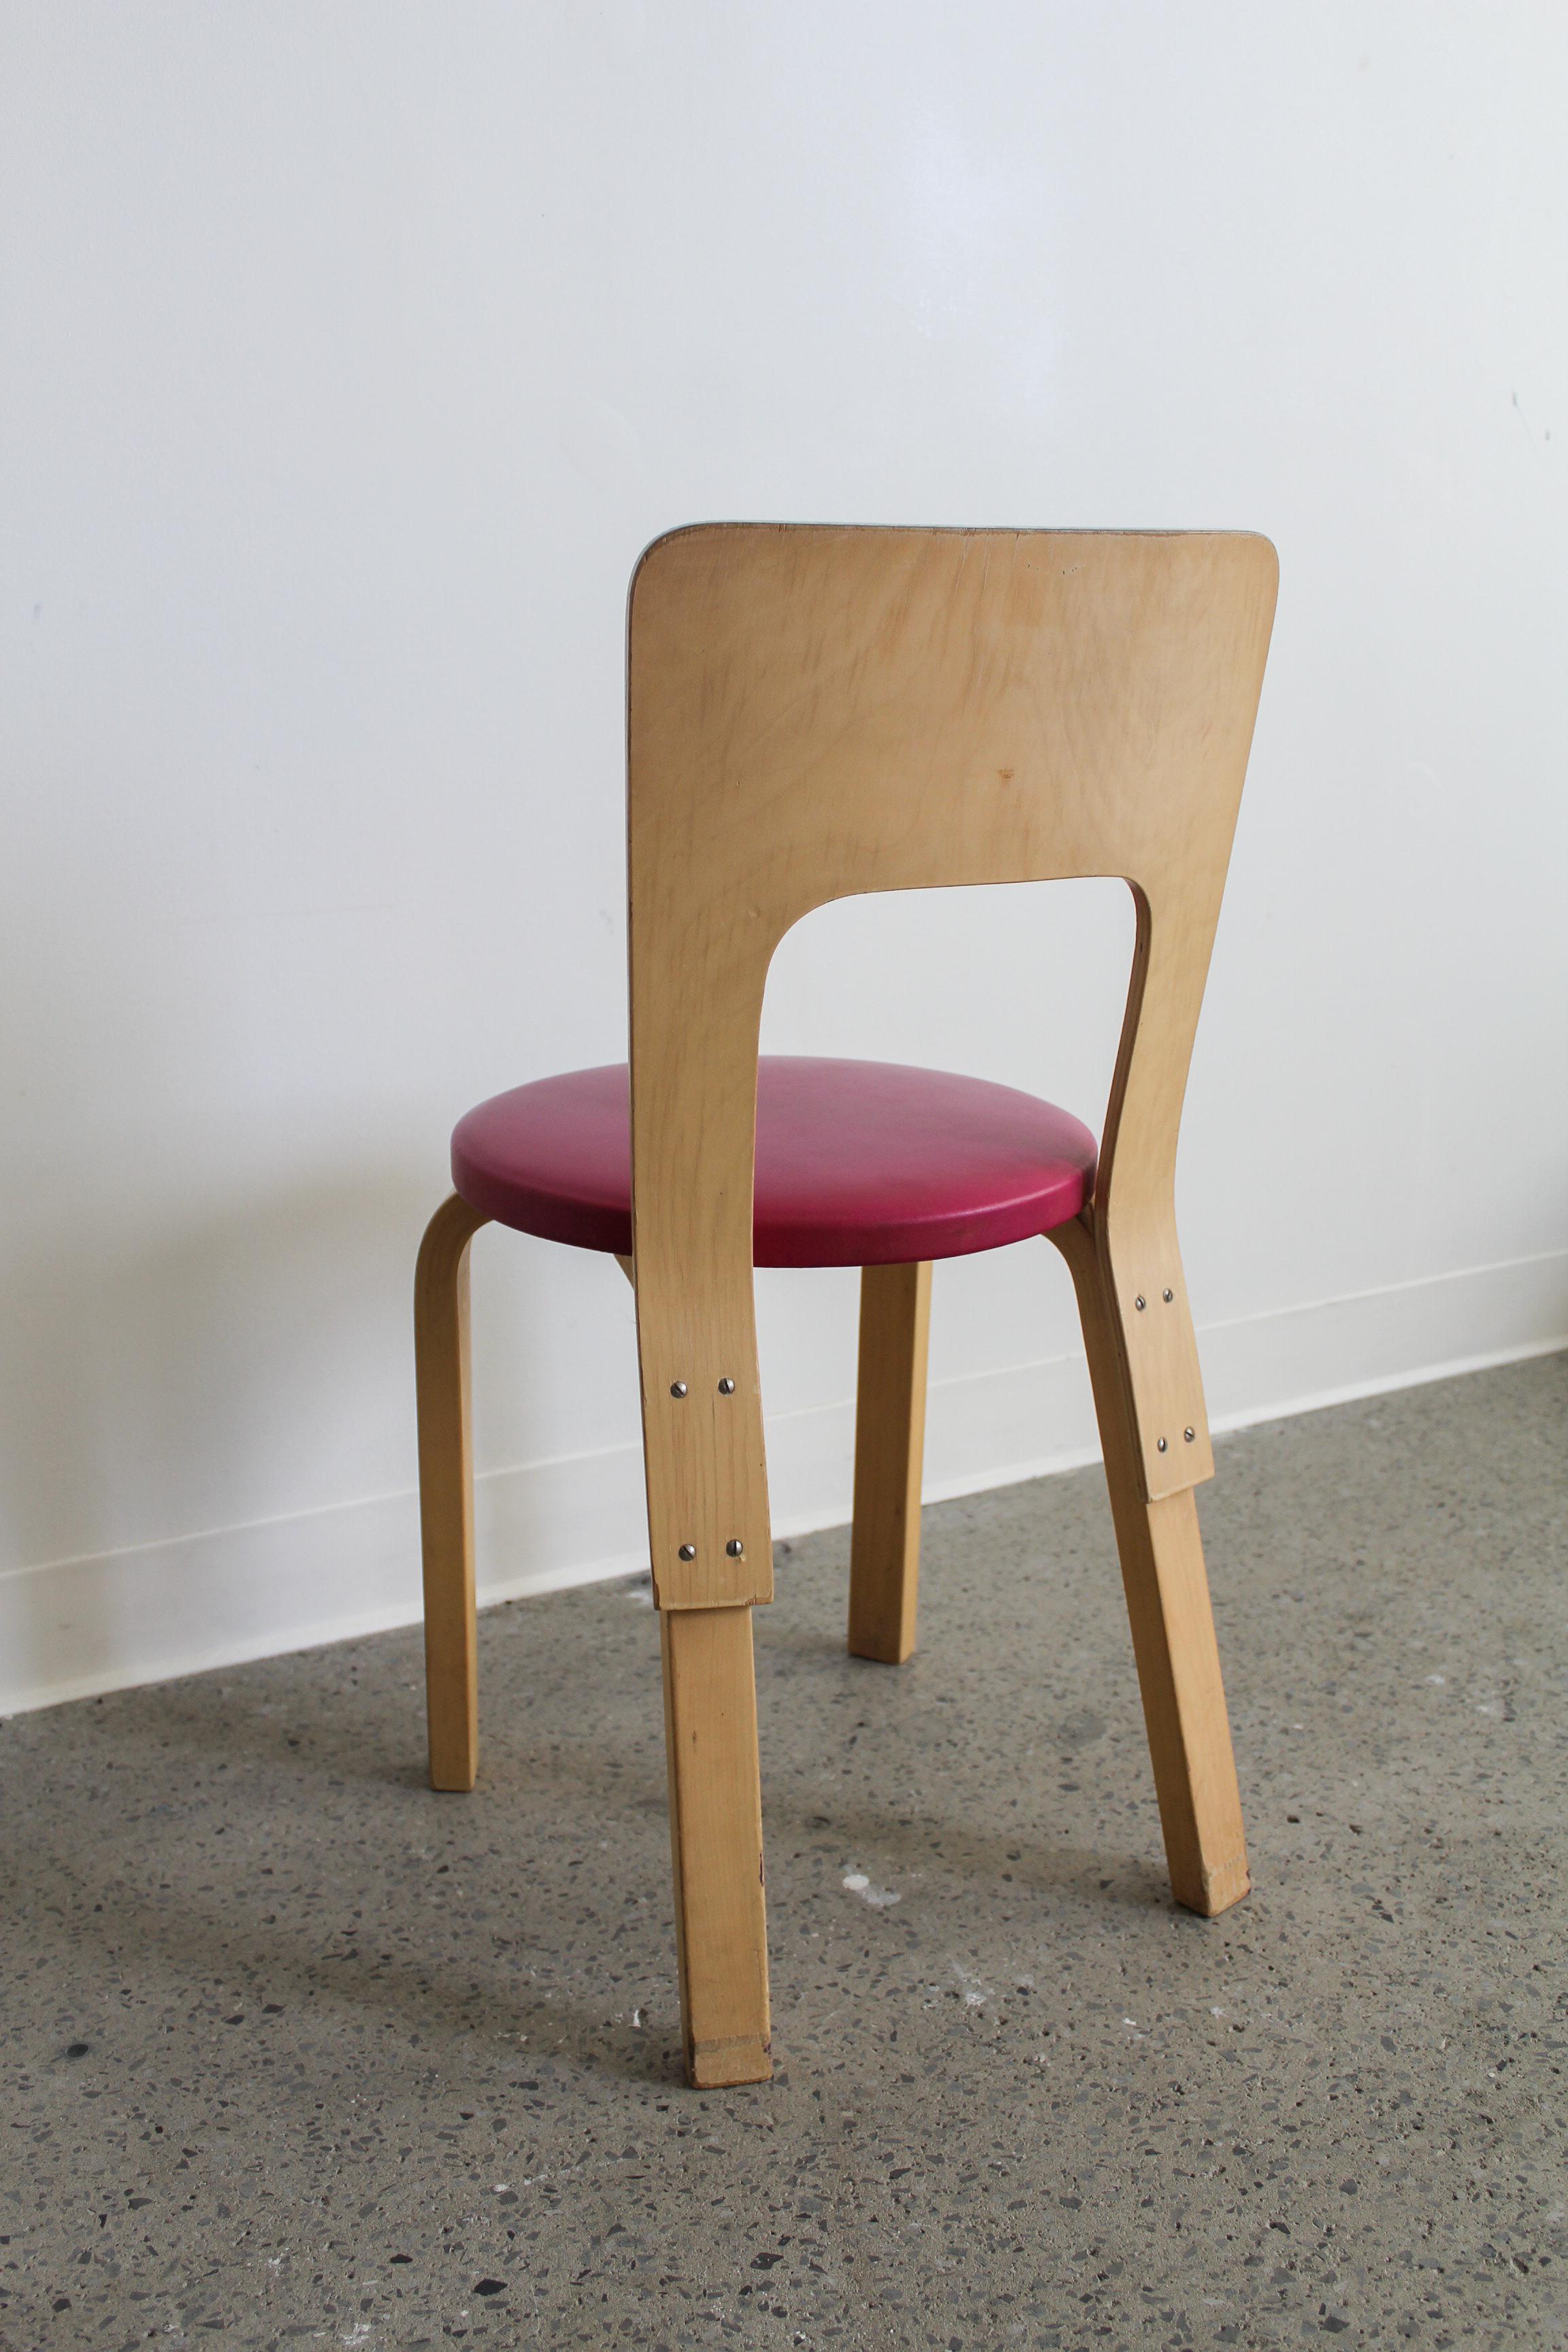 Chaise Model 66 par Alvar Aalto pour Artek, années 1960. Structure en bois de bouleau et siège rembourré fuchsia.

En bon état vintage, petite déchirure dans l'assise et usure du dos en bois.

Dimensions : 30 